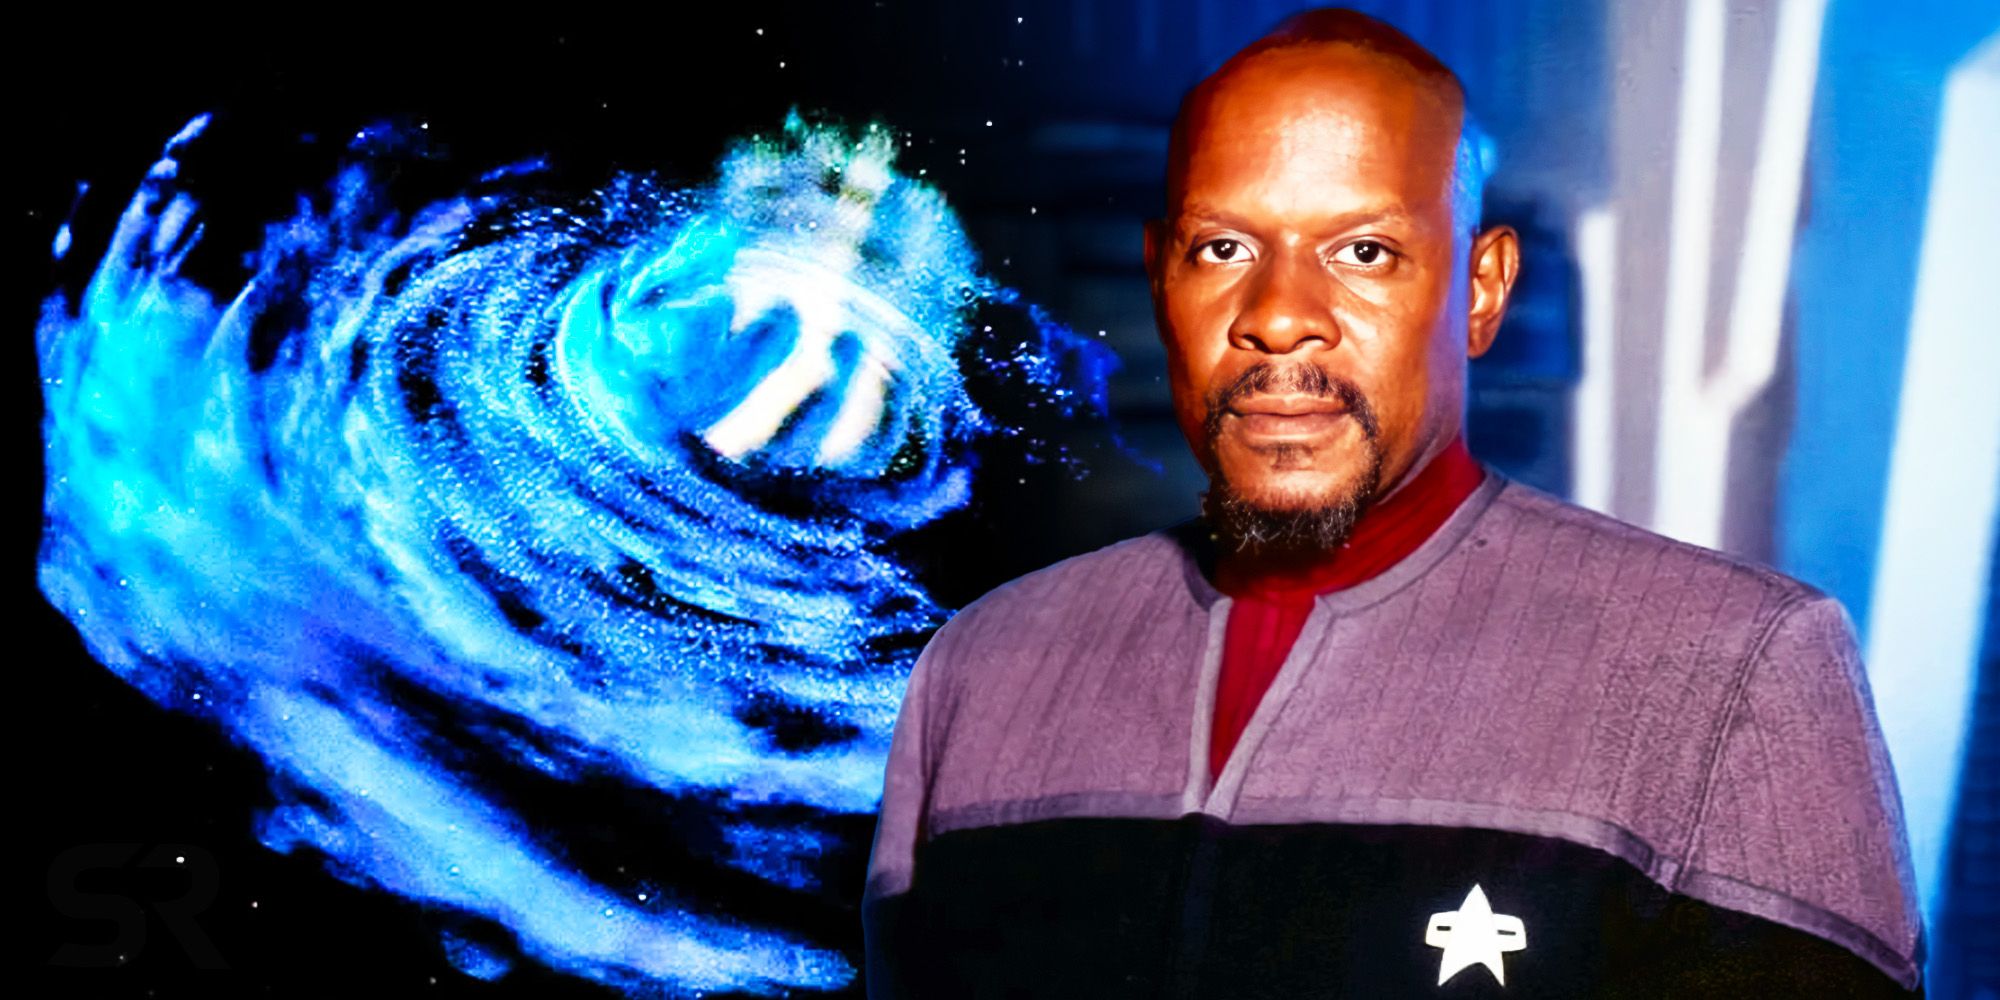 El nuevo nombre de Benjamin Sisko redefine su lugar en el universo de Star Trek